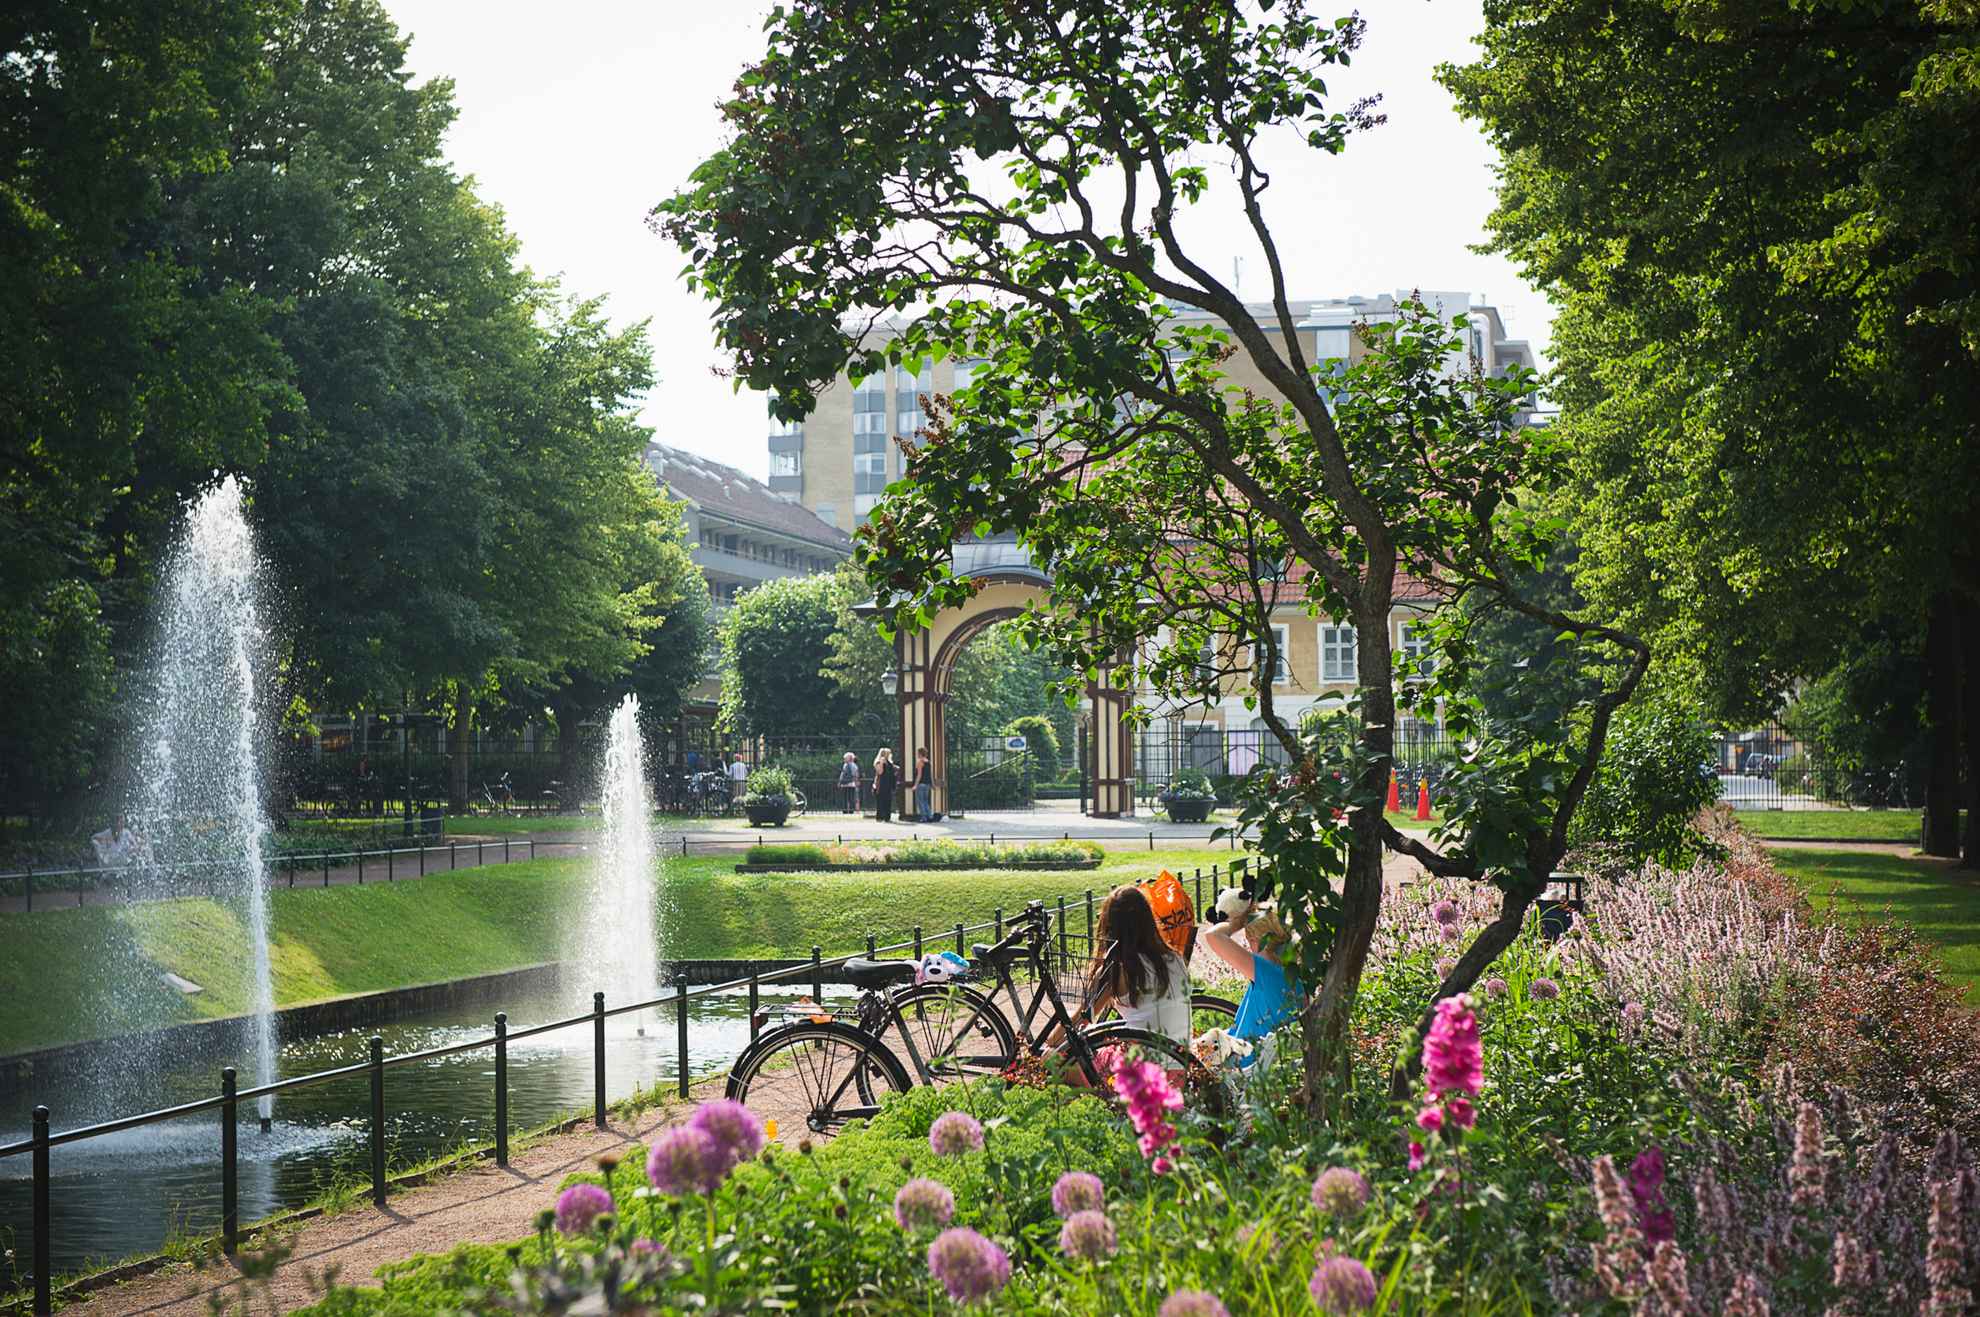 Fleurs et verdure à l'intérieur d'un parc urbain. On voit le dos de deux femmes assises au bord d'un bassin avec deux fontaines. À l'arrière-plan, on voit l'entrée du parc et quelques immeubles à l'extérieur du parc.